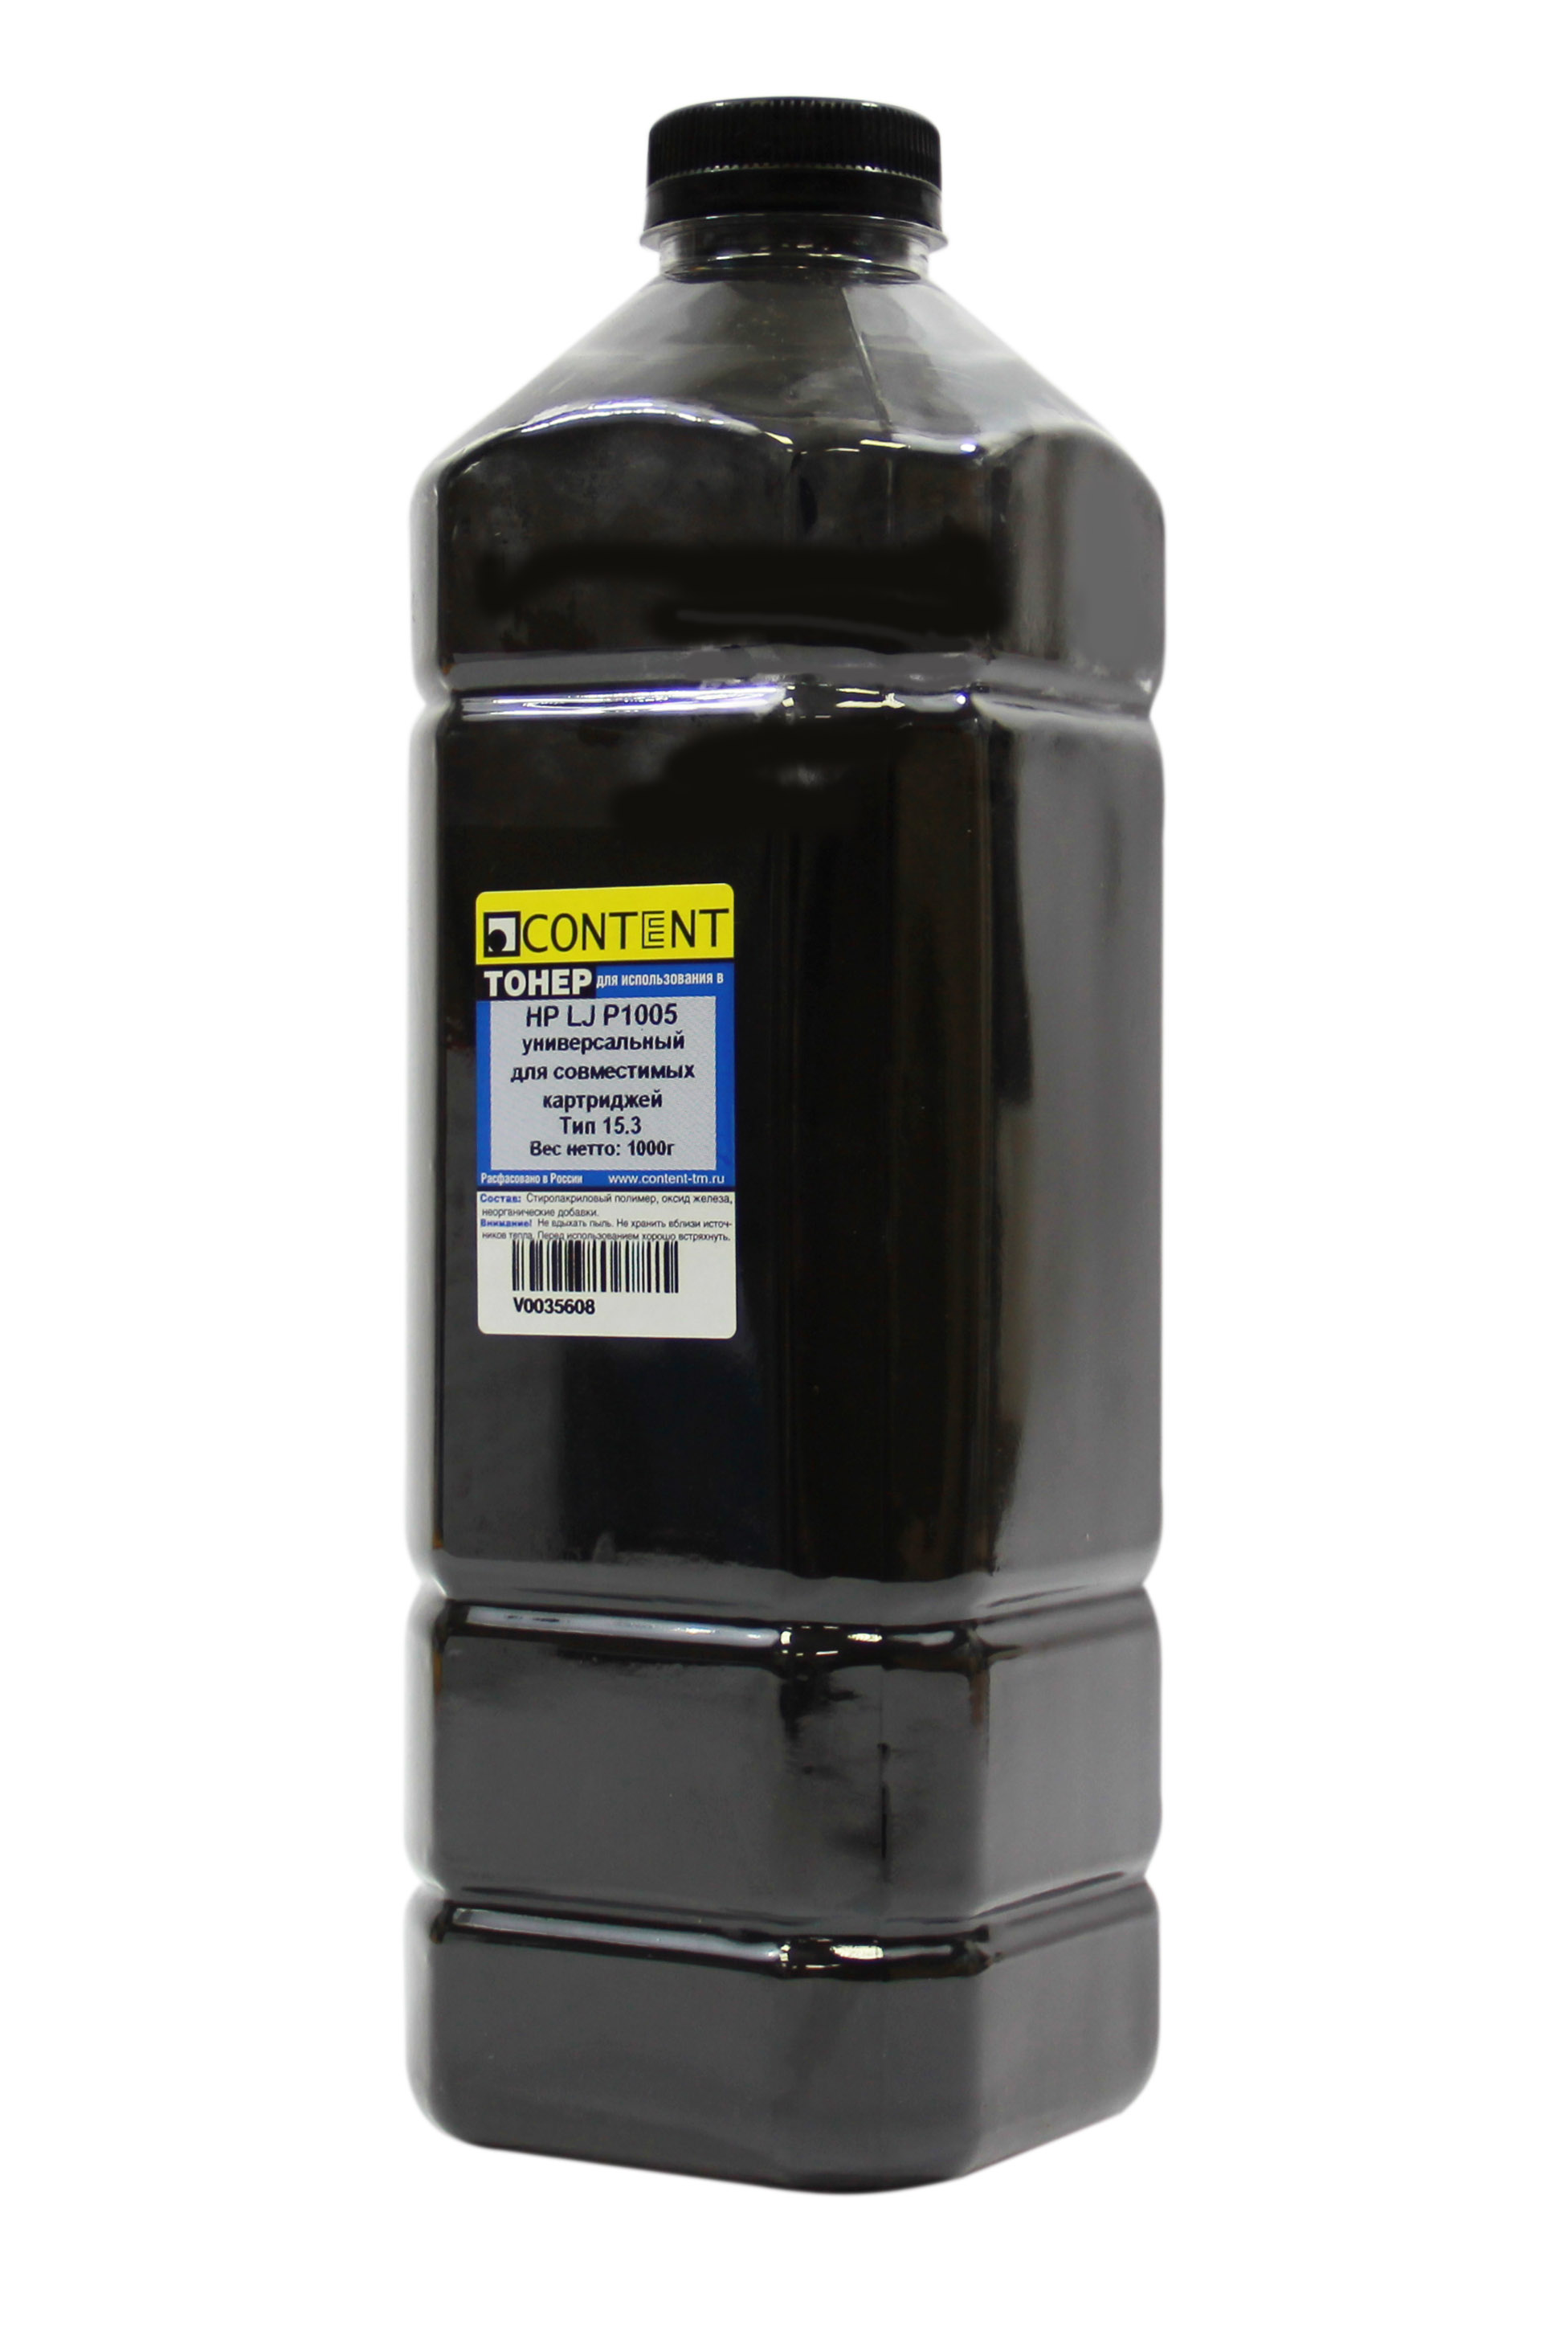 Тонер Content Тип 15.3, бутыль 1 кг, черный, совместимый для HP LJ P1005, универсальный (V0035608)